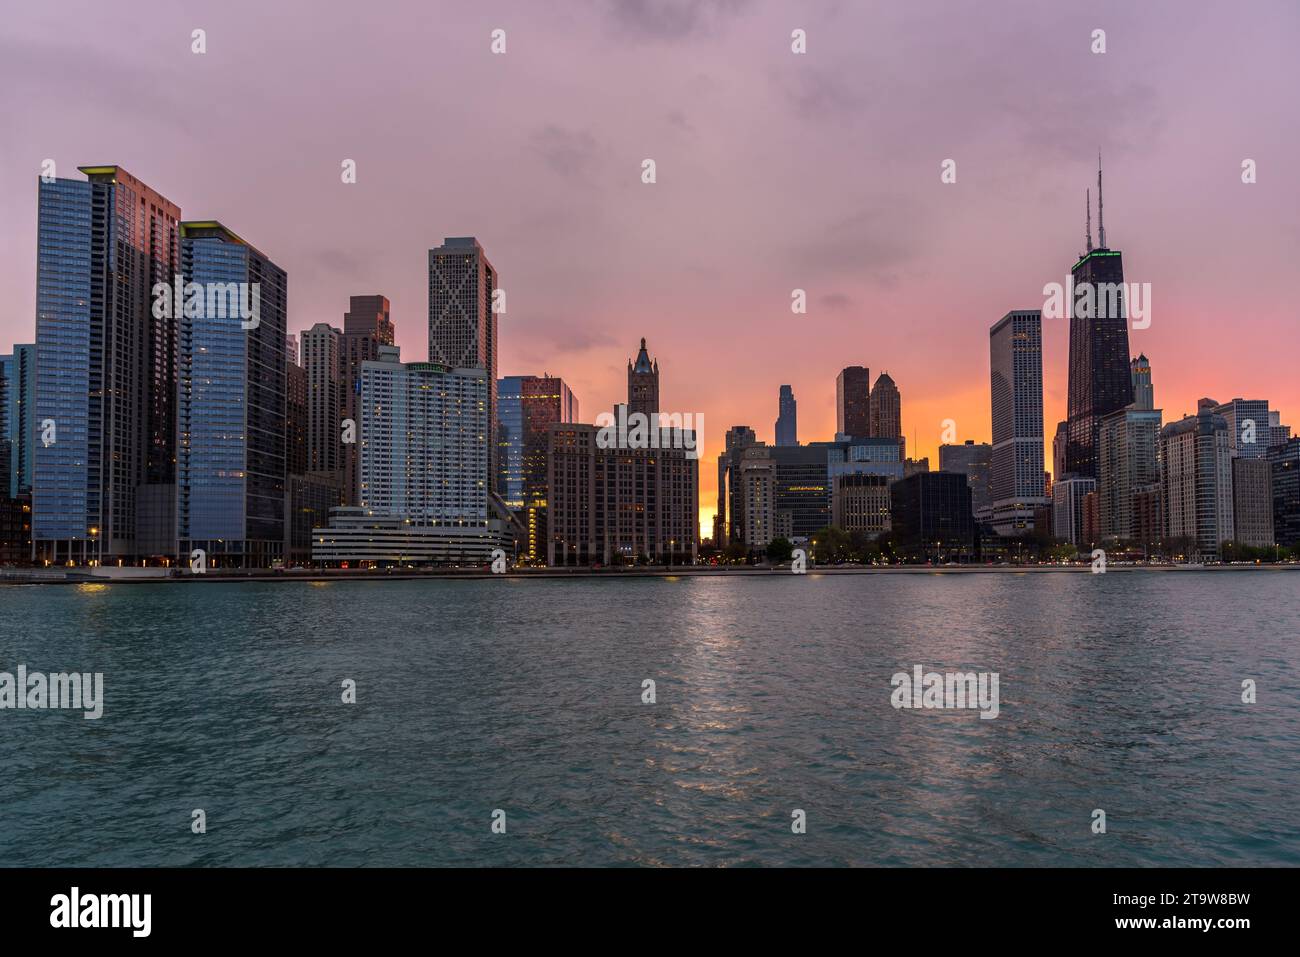 Vue sur les gratte-ciel de Chicago sous un ciel nuageux au coucher du soleil Banque D'Images